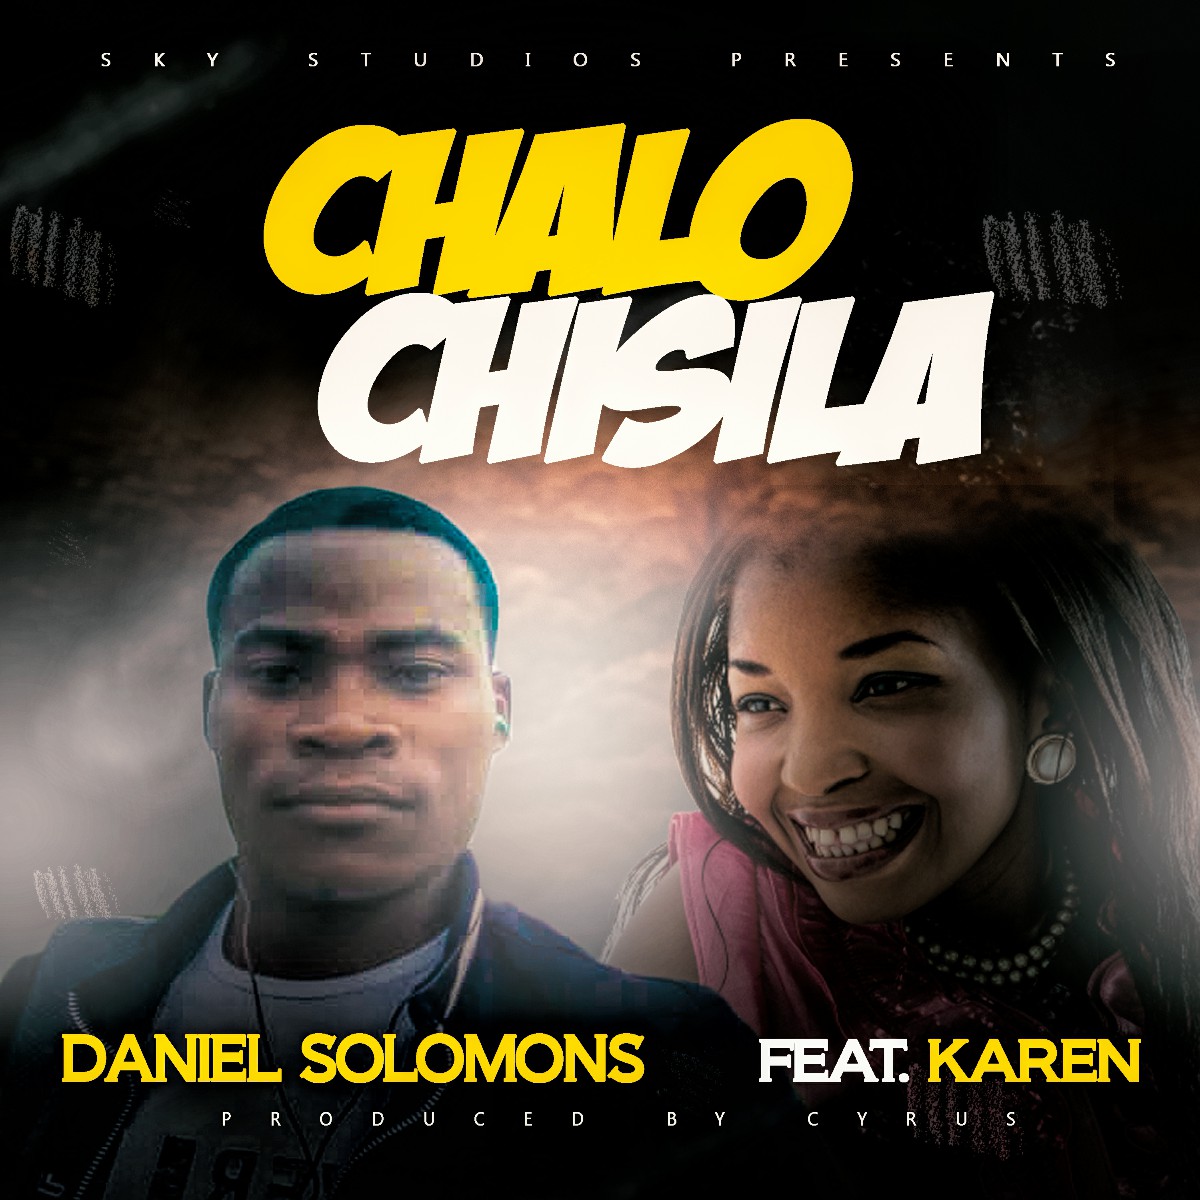 Daniel Solomons ft. Karen - Chalo Chisila